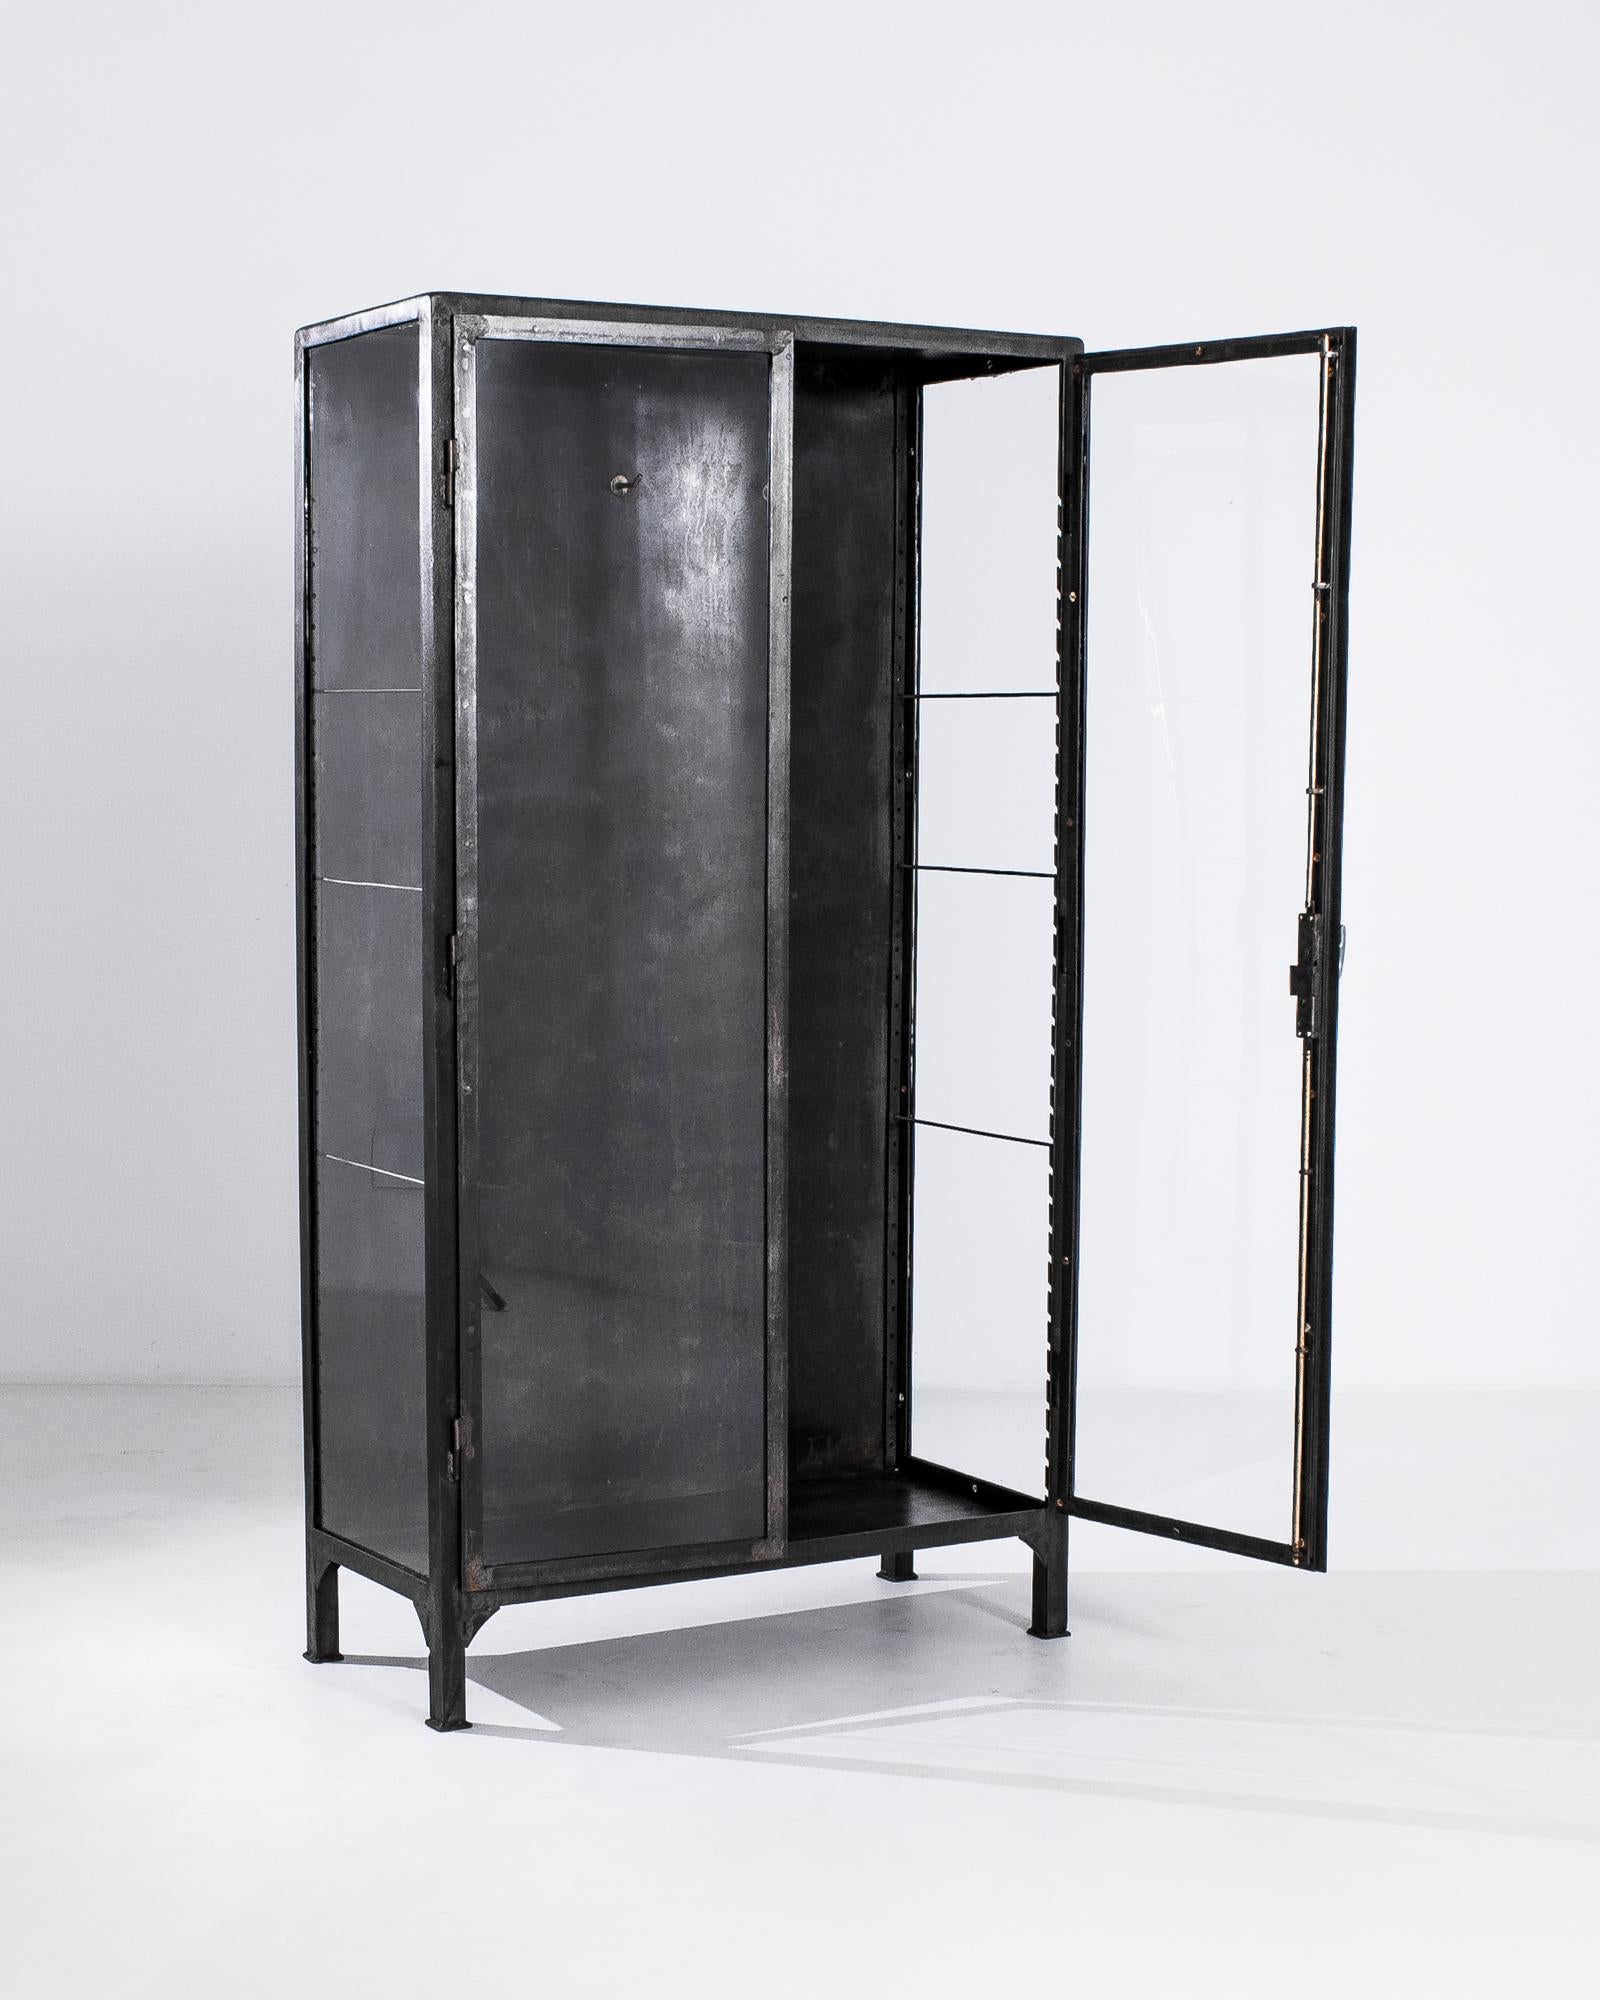 Une vitrine en métal des années 1950 en Europe centrale. La menuiserie métallique soudée, lissée dans les angles, forme un cadre utilitaire mais agréable à l'œil pour les étagères et les tiroirs en verre délicatement composés de ce meuble. Créée